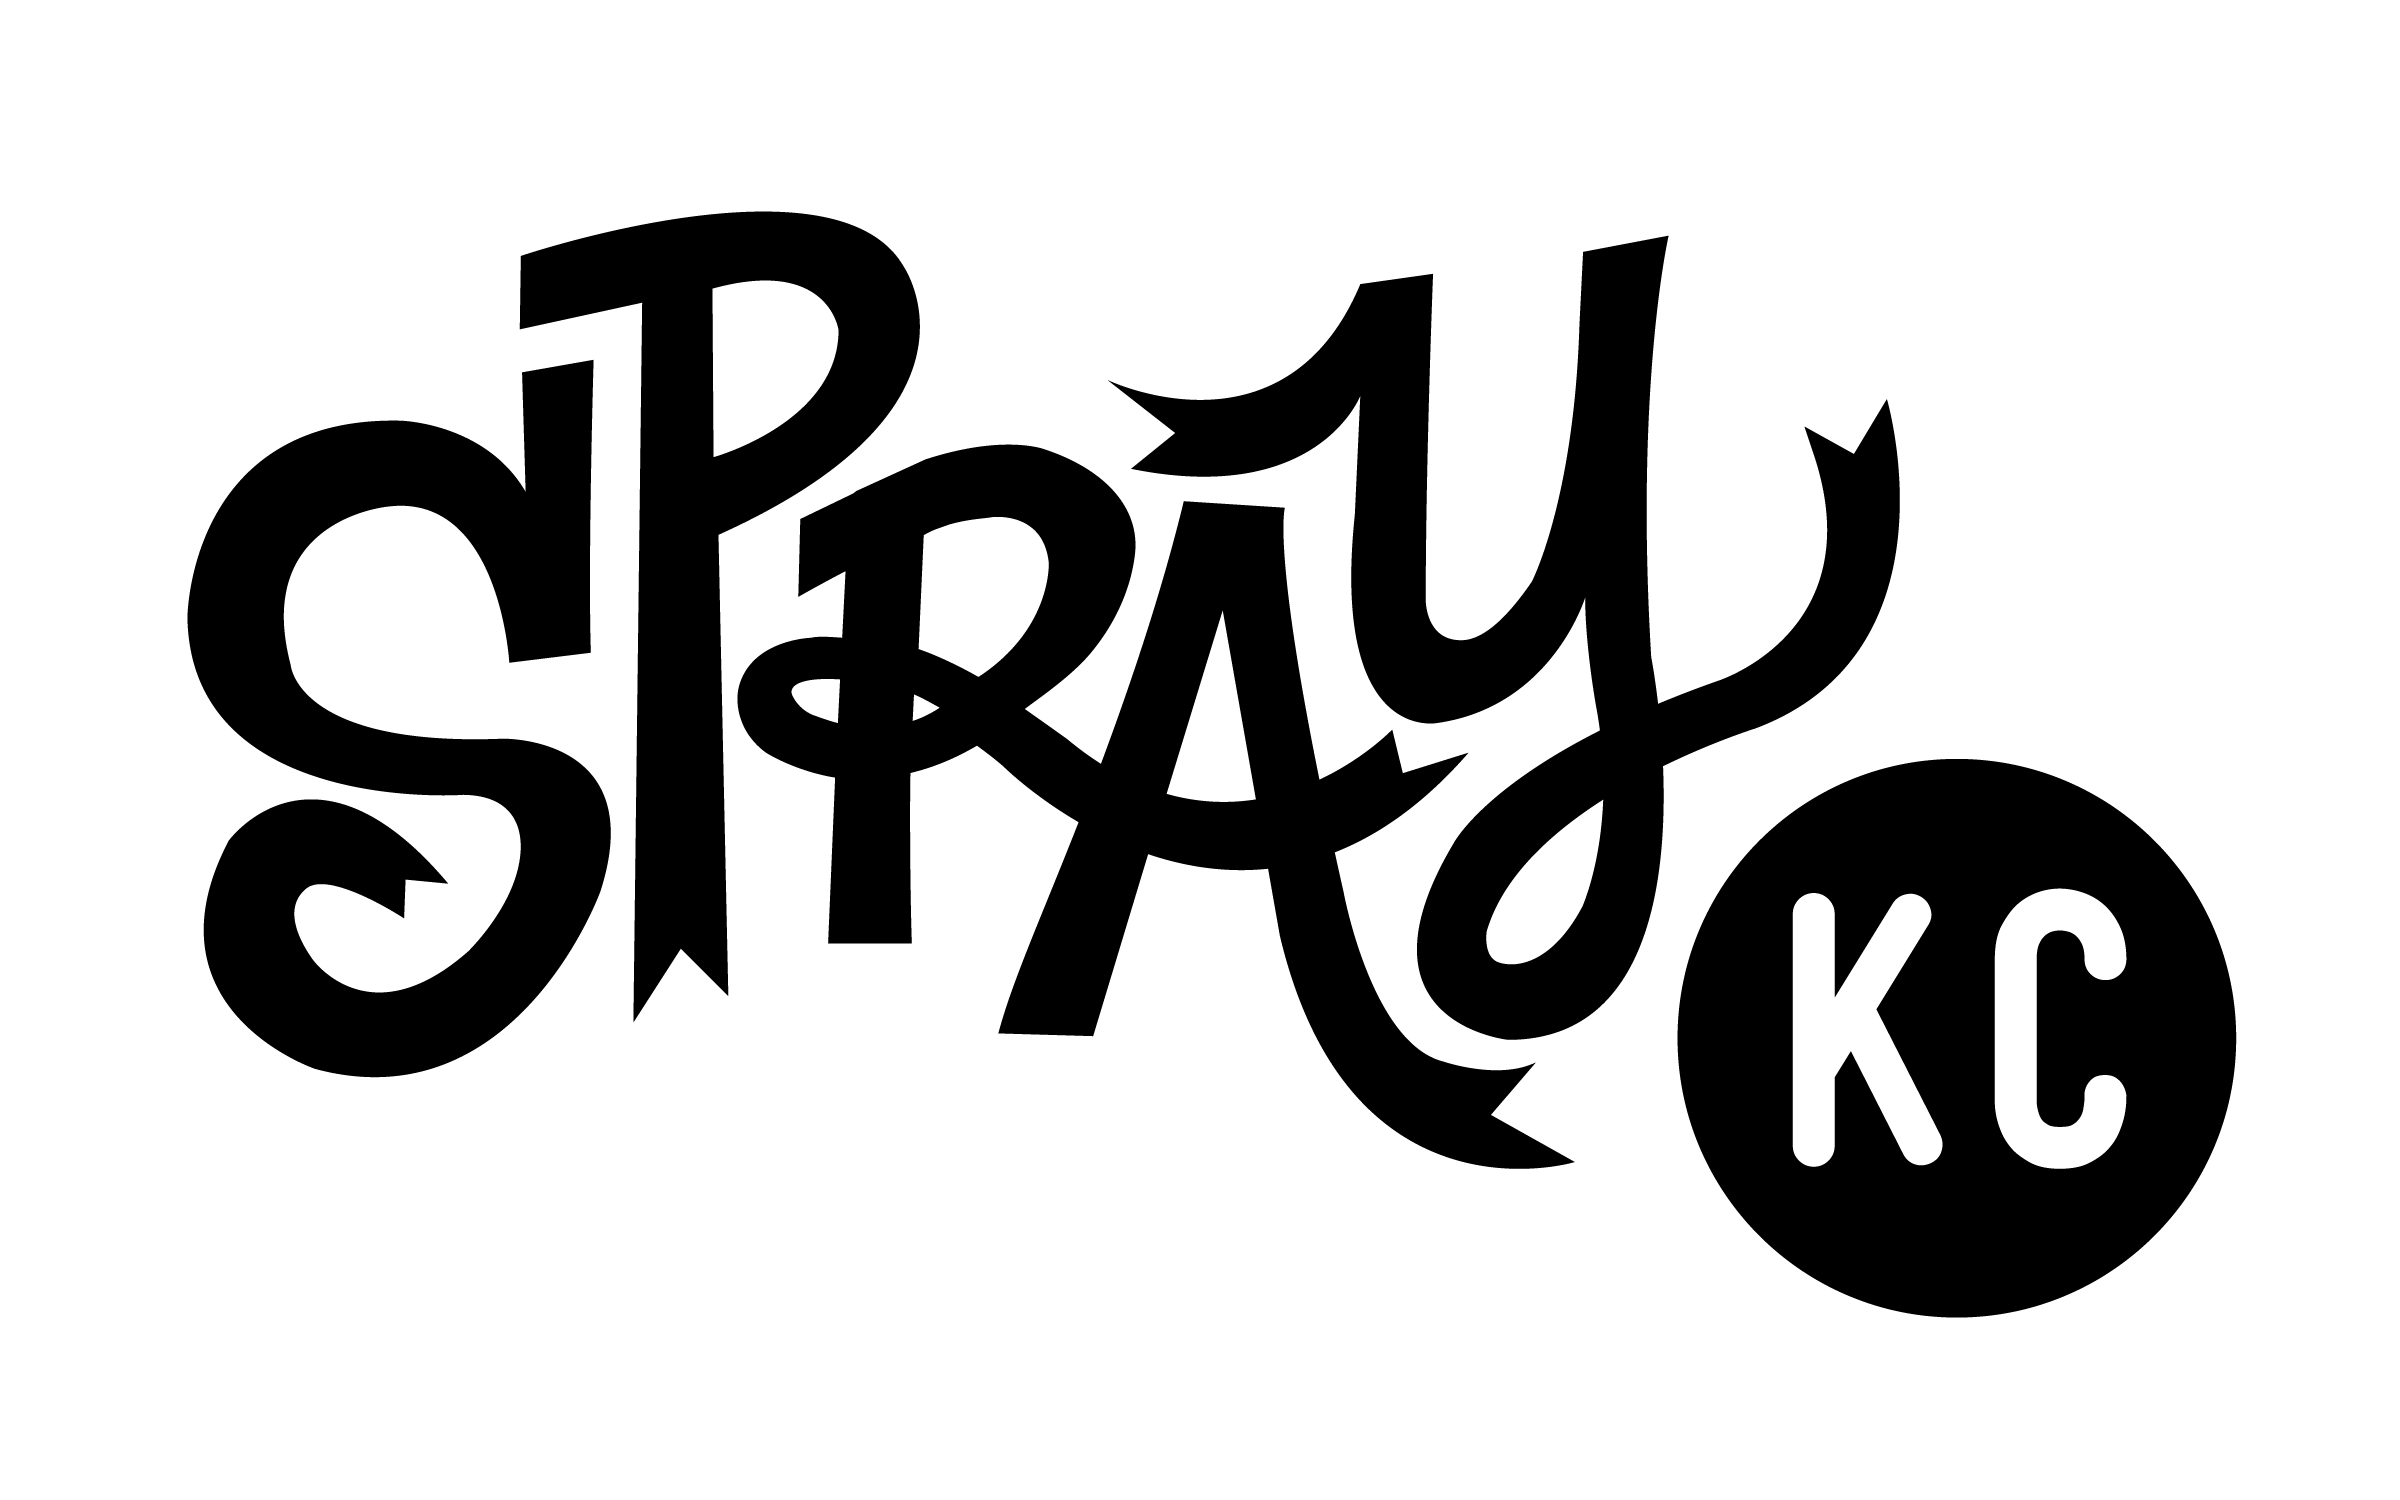 Alt Cap Logo